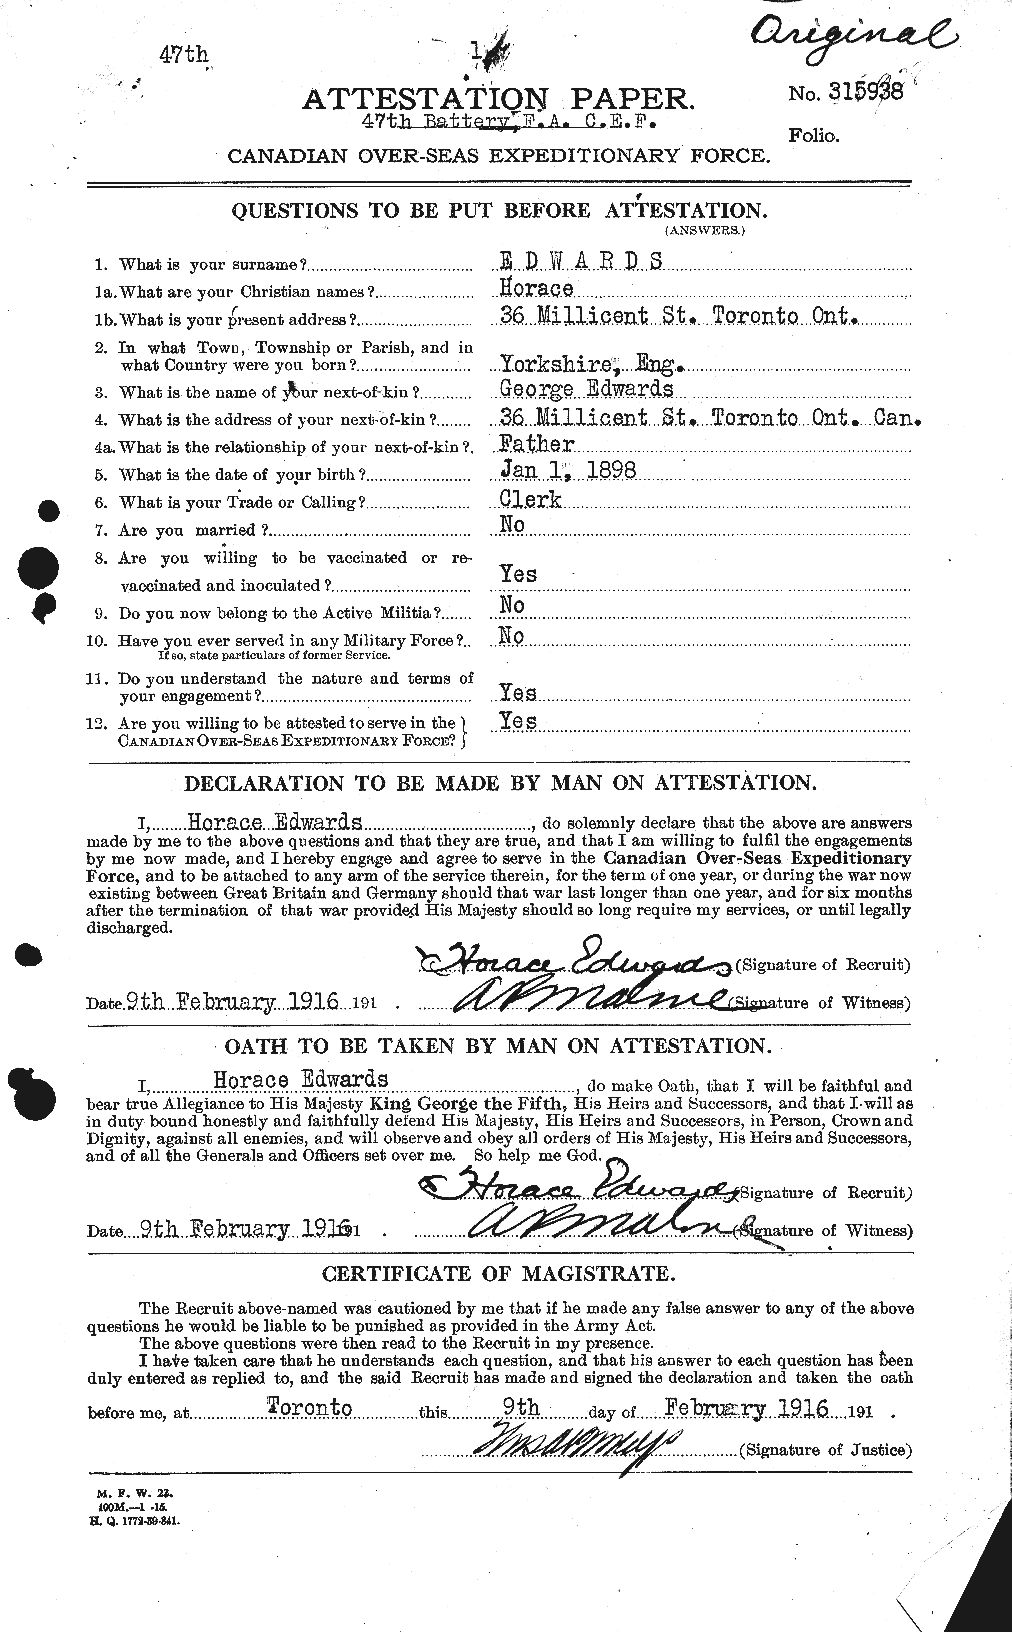 Dossiers du Personnel de la Première Guerre mondiale - CEC 309785a